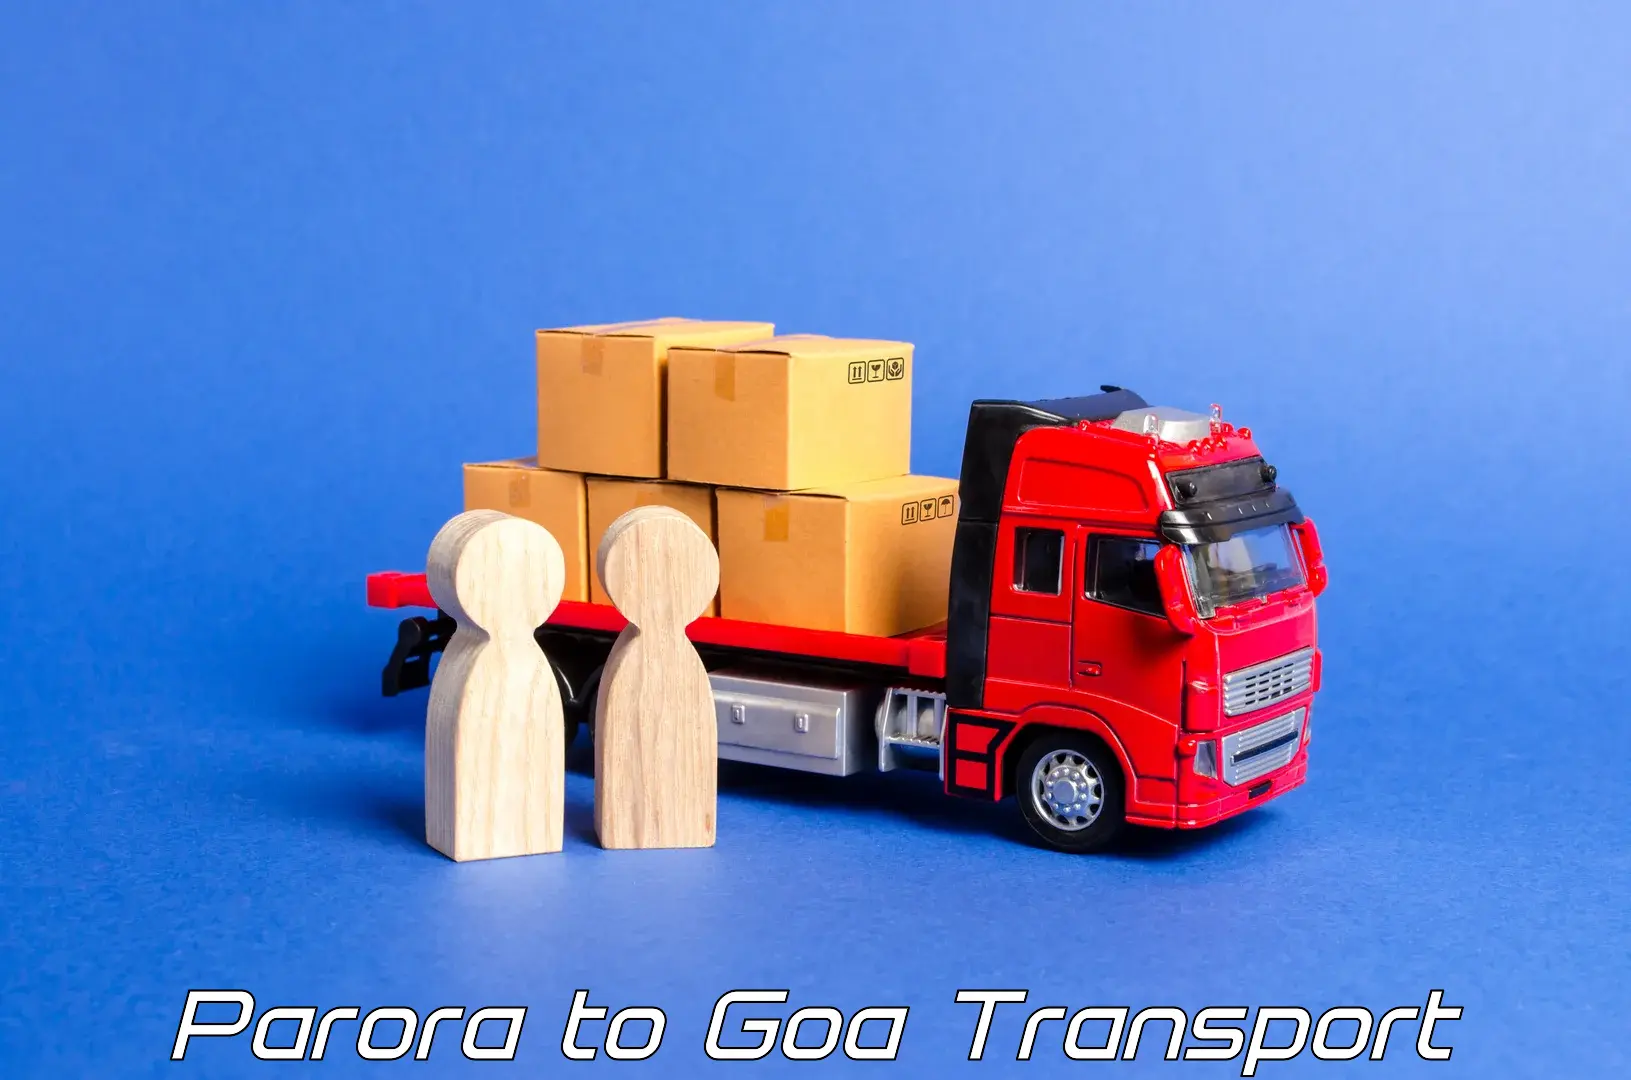 Intercity transport Parora to Canacona